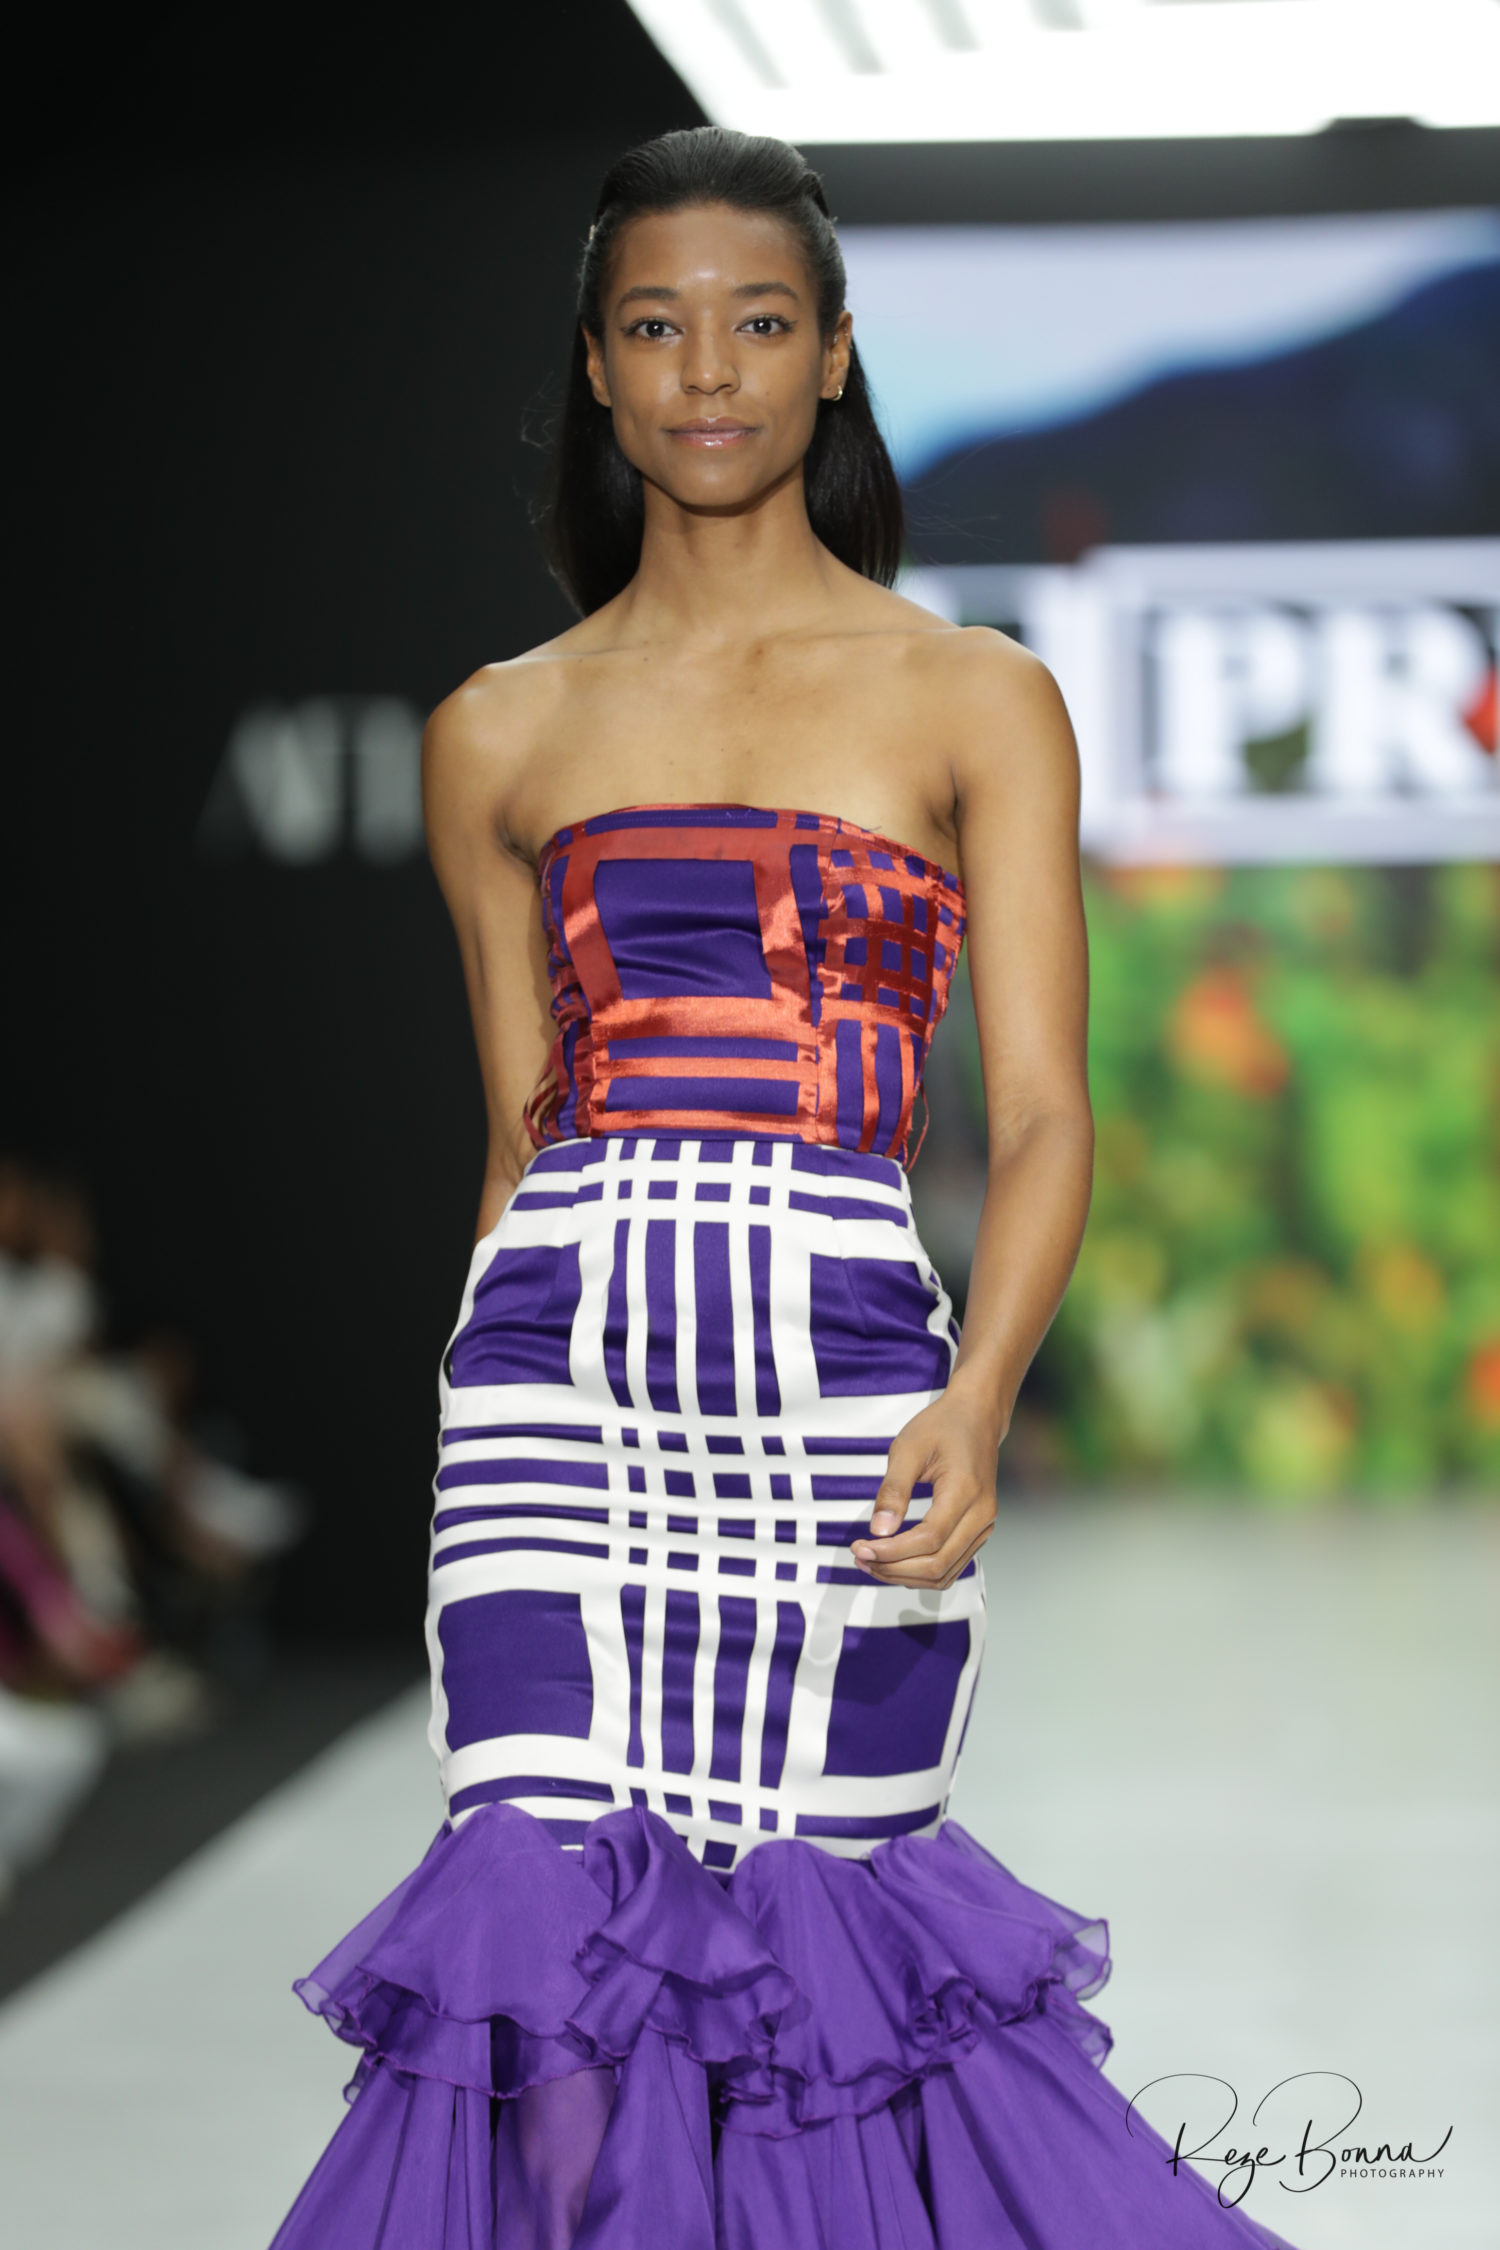 #AFICTFW19 | AFI Capetown Fashion Week AFI Prive